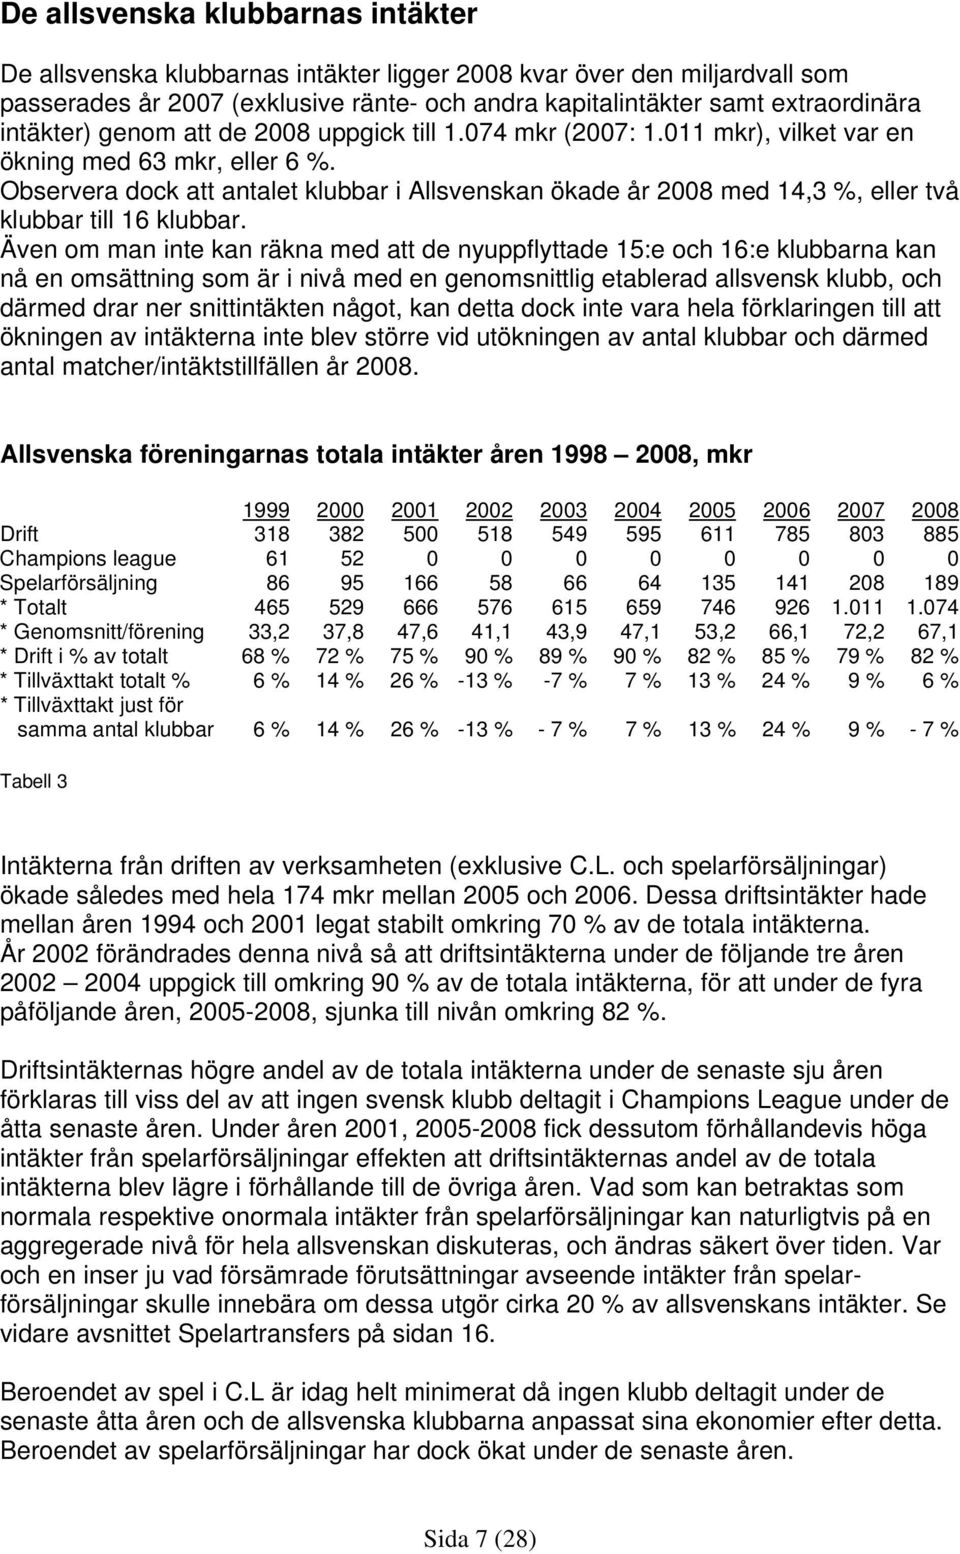 Observera dock att antalet klubbar i Allsvenskan ökade år 2008 med 14,3 %, eller två klubbar till 16 klubbar.